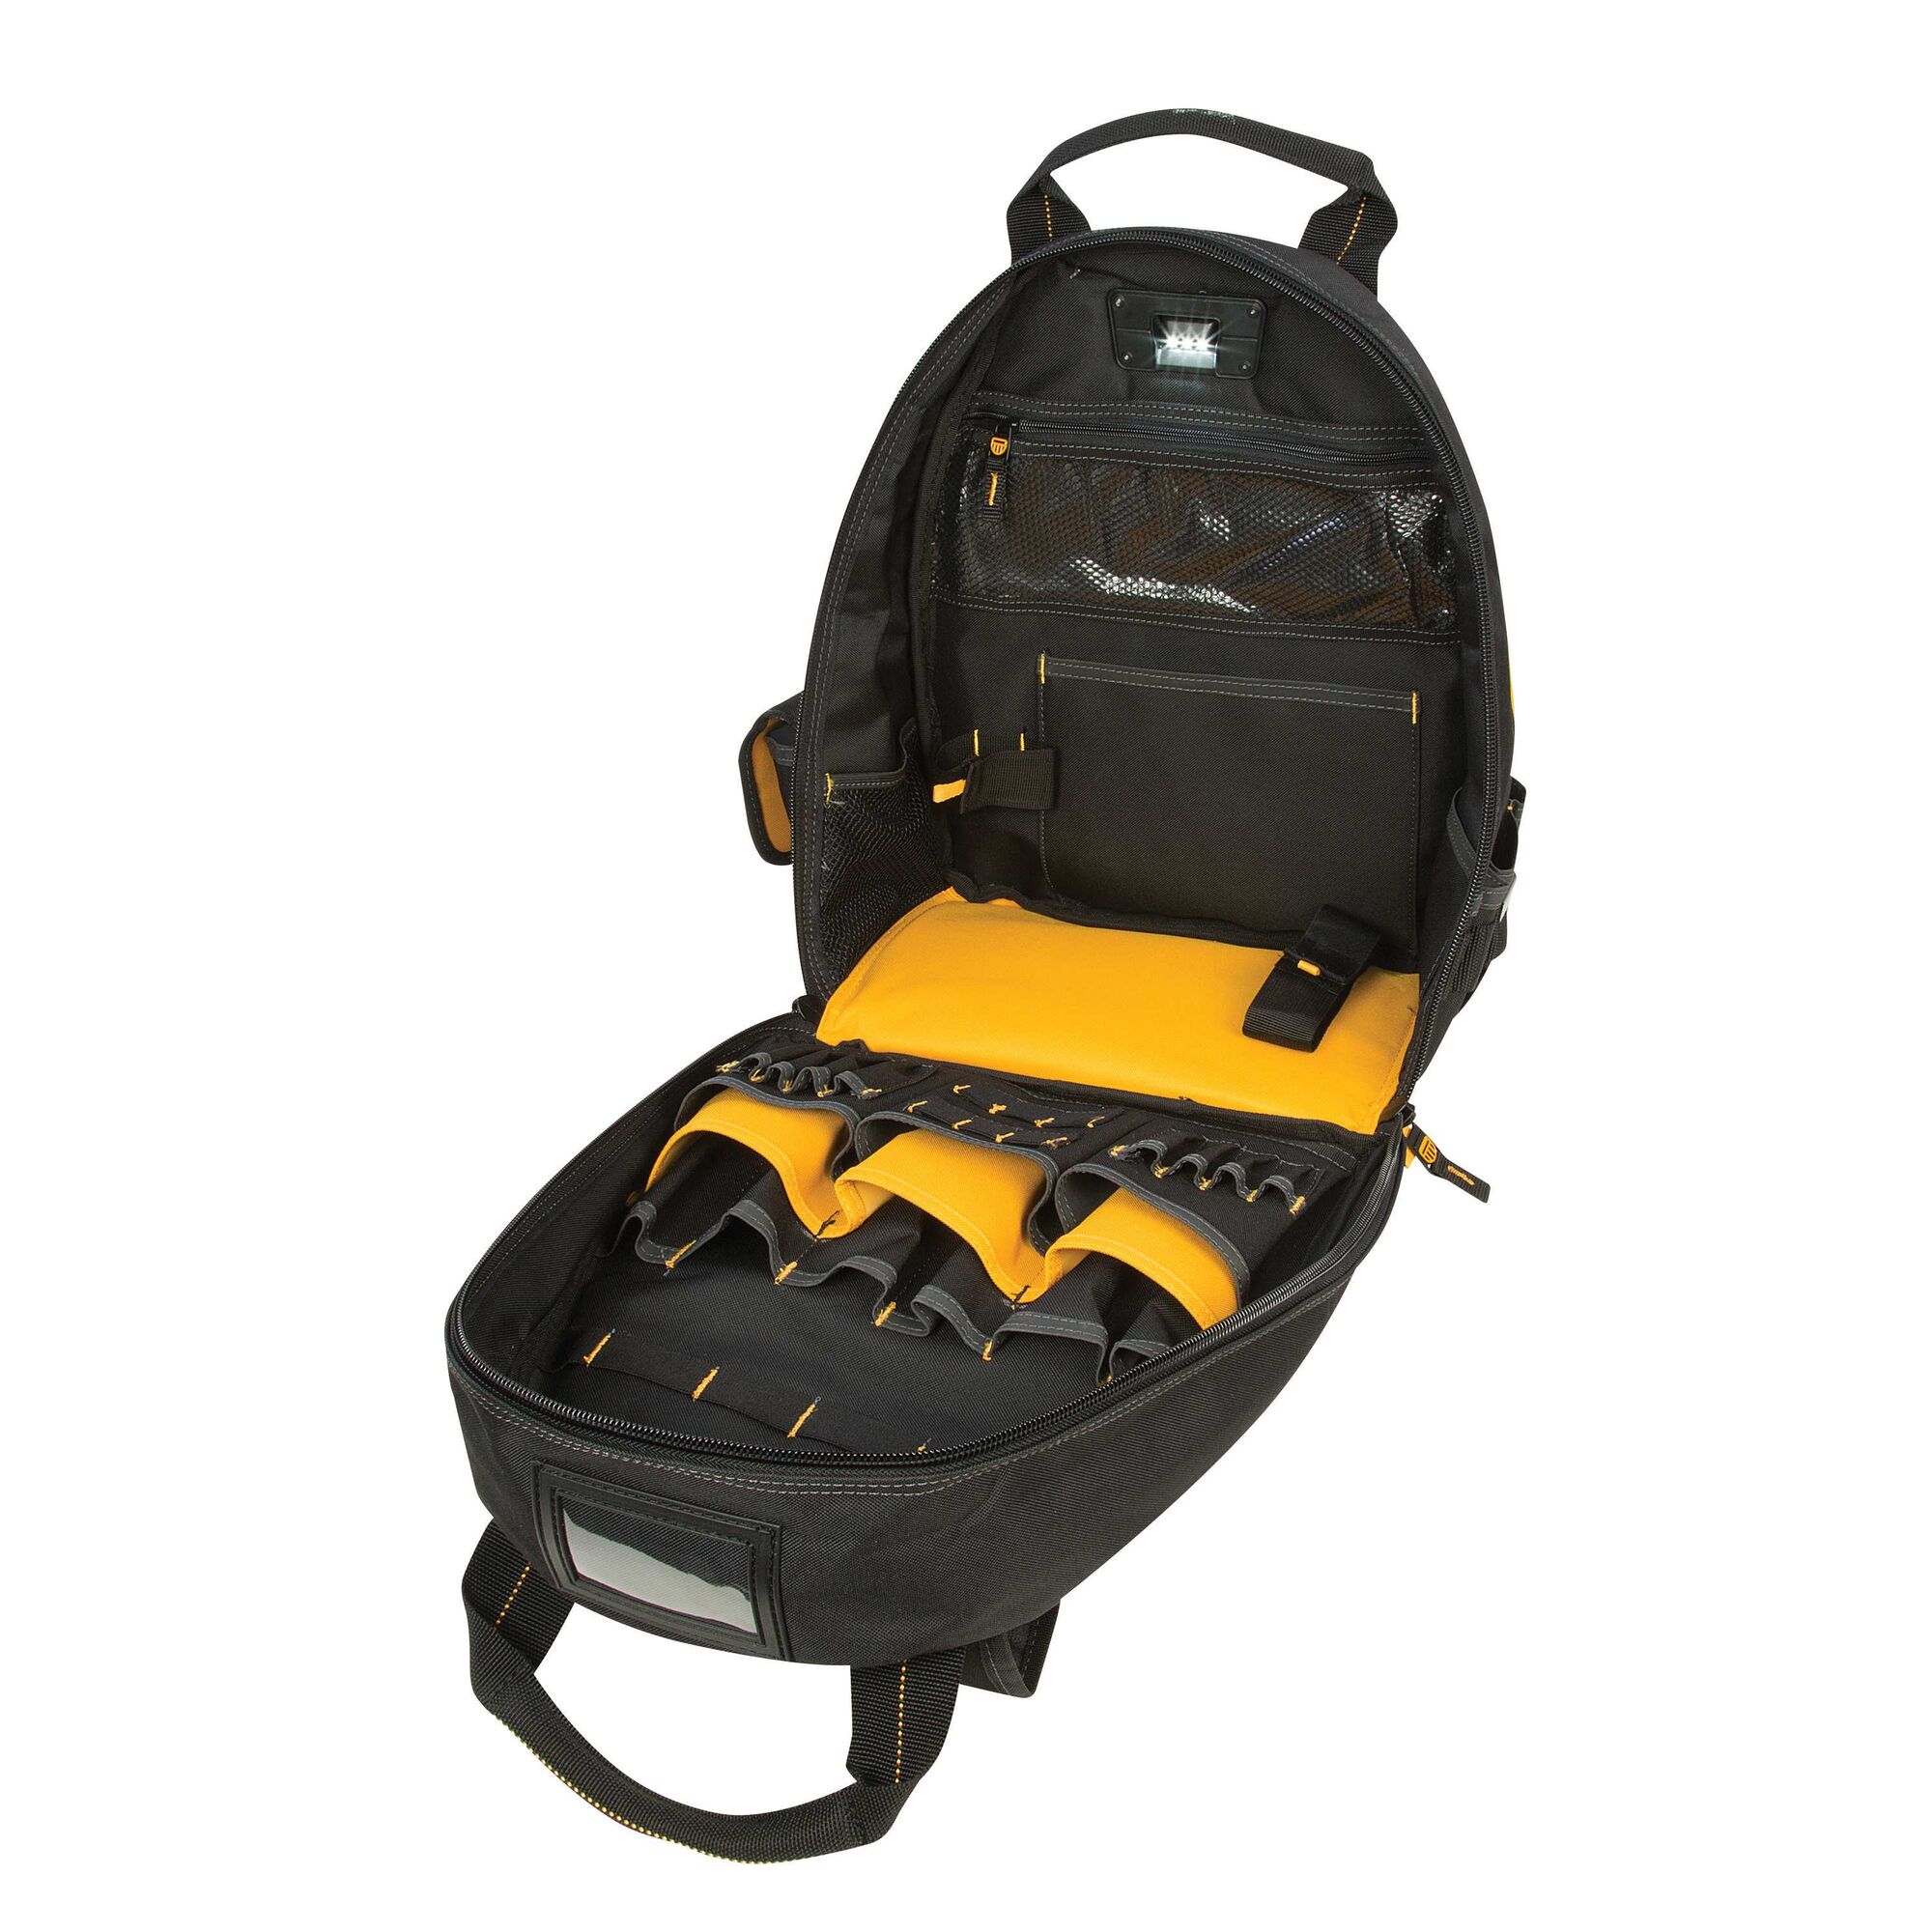 Pro 57 Pocket LED Light Lighted Tool Backpack Bag Carrier Padded DeWalt DGL523 